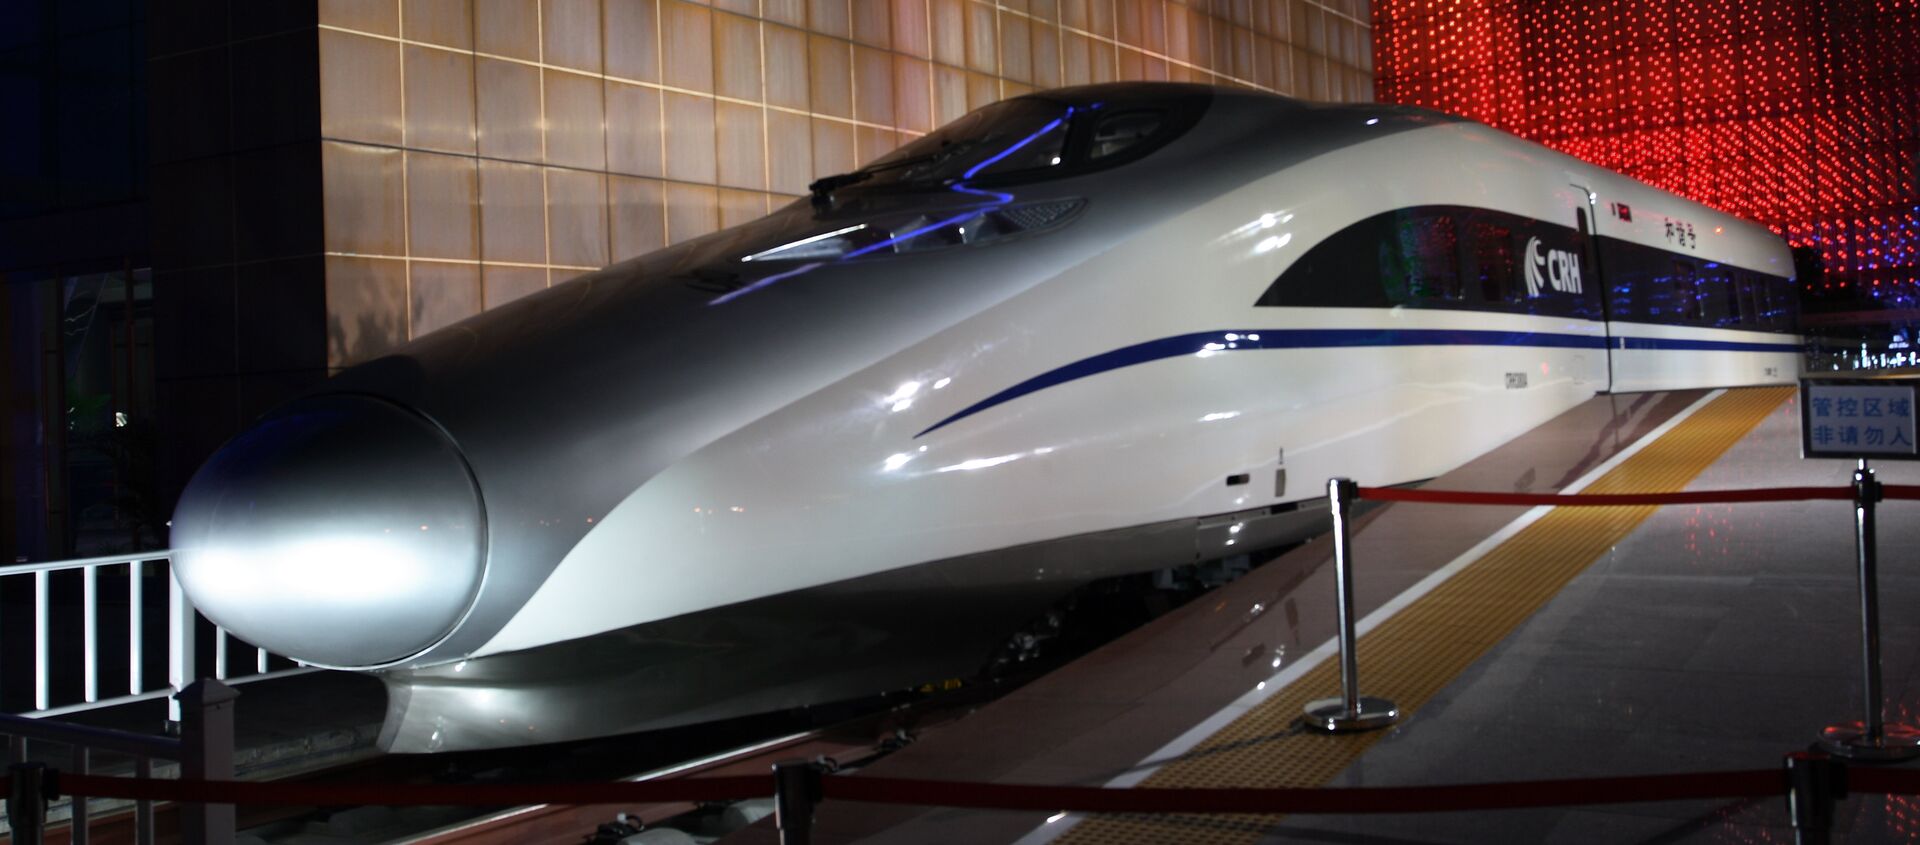 Tren rápido del modelo CRH380A, fabricado por CSR Sifang en la ciudad de Qingdao, China - Sputnik Mundo, 1920, 03.02.2015